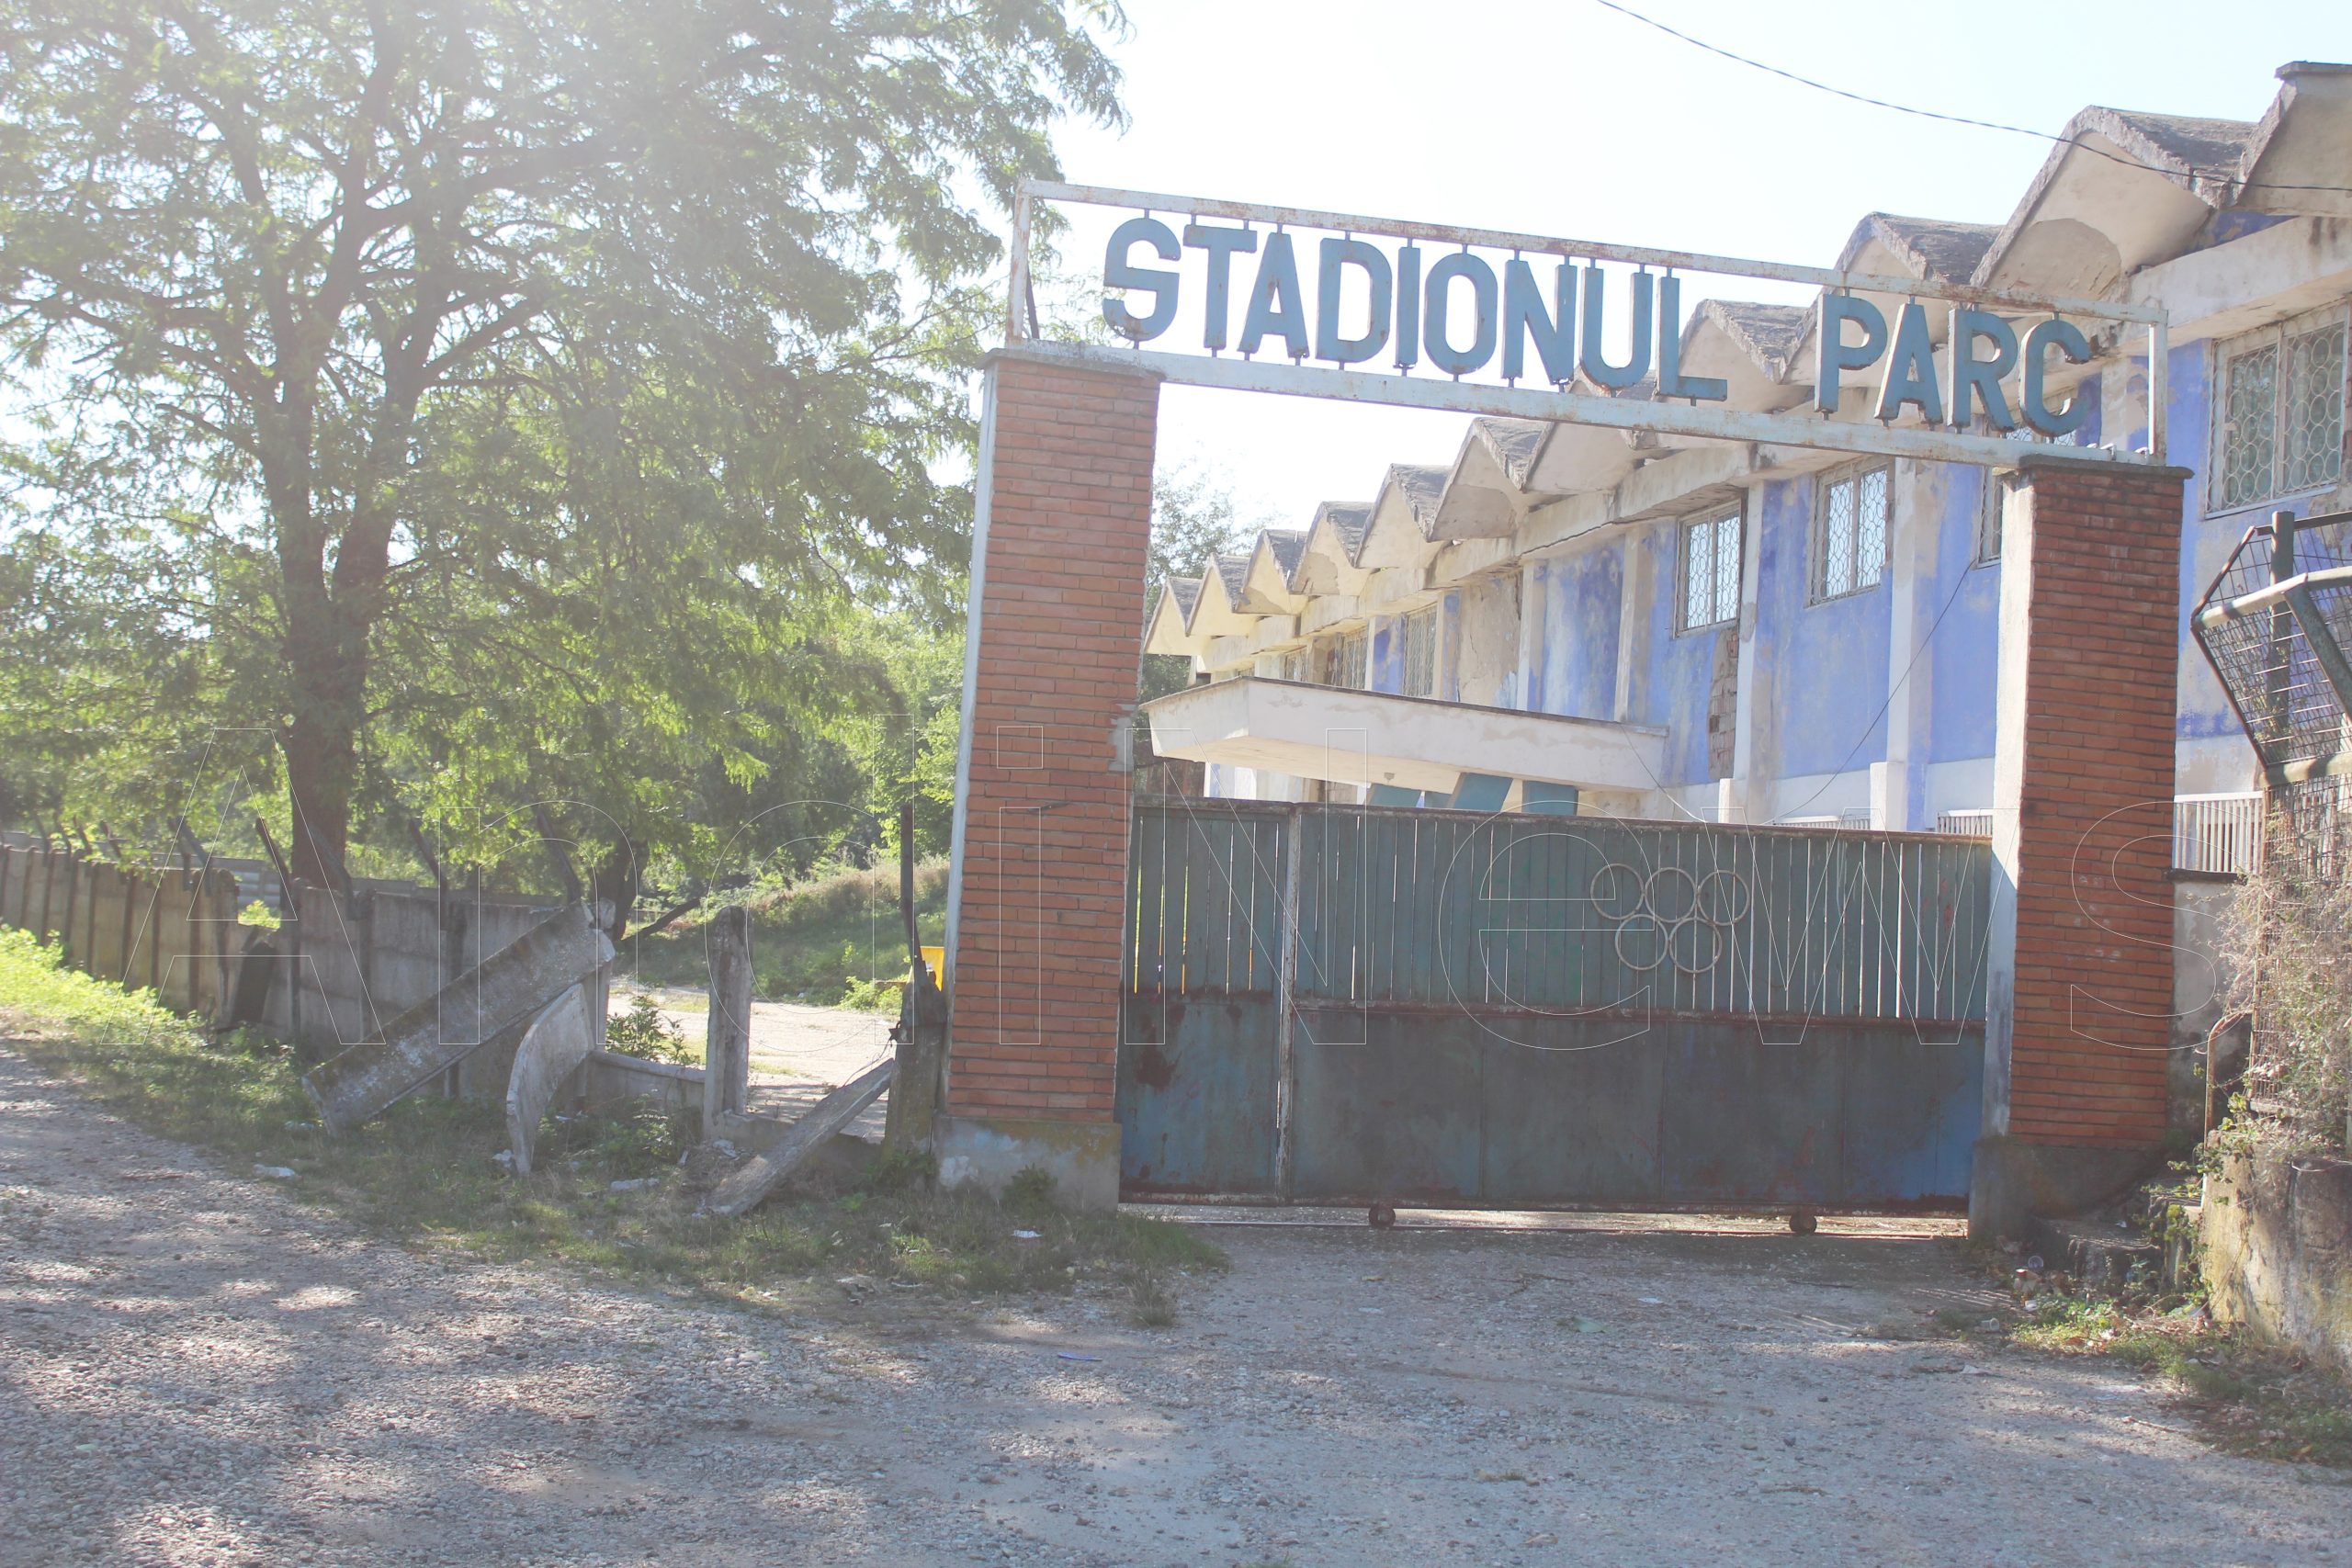 Acte de vandalism în spatele tribunei oficiale a Stadionului “Parc” din Caracal